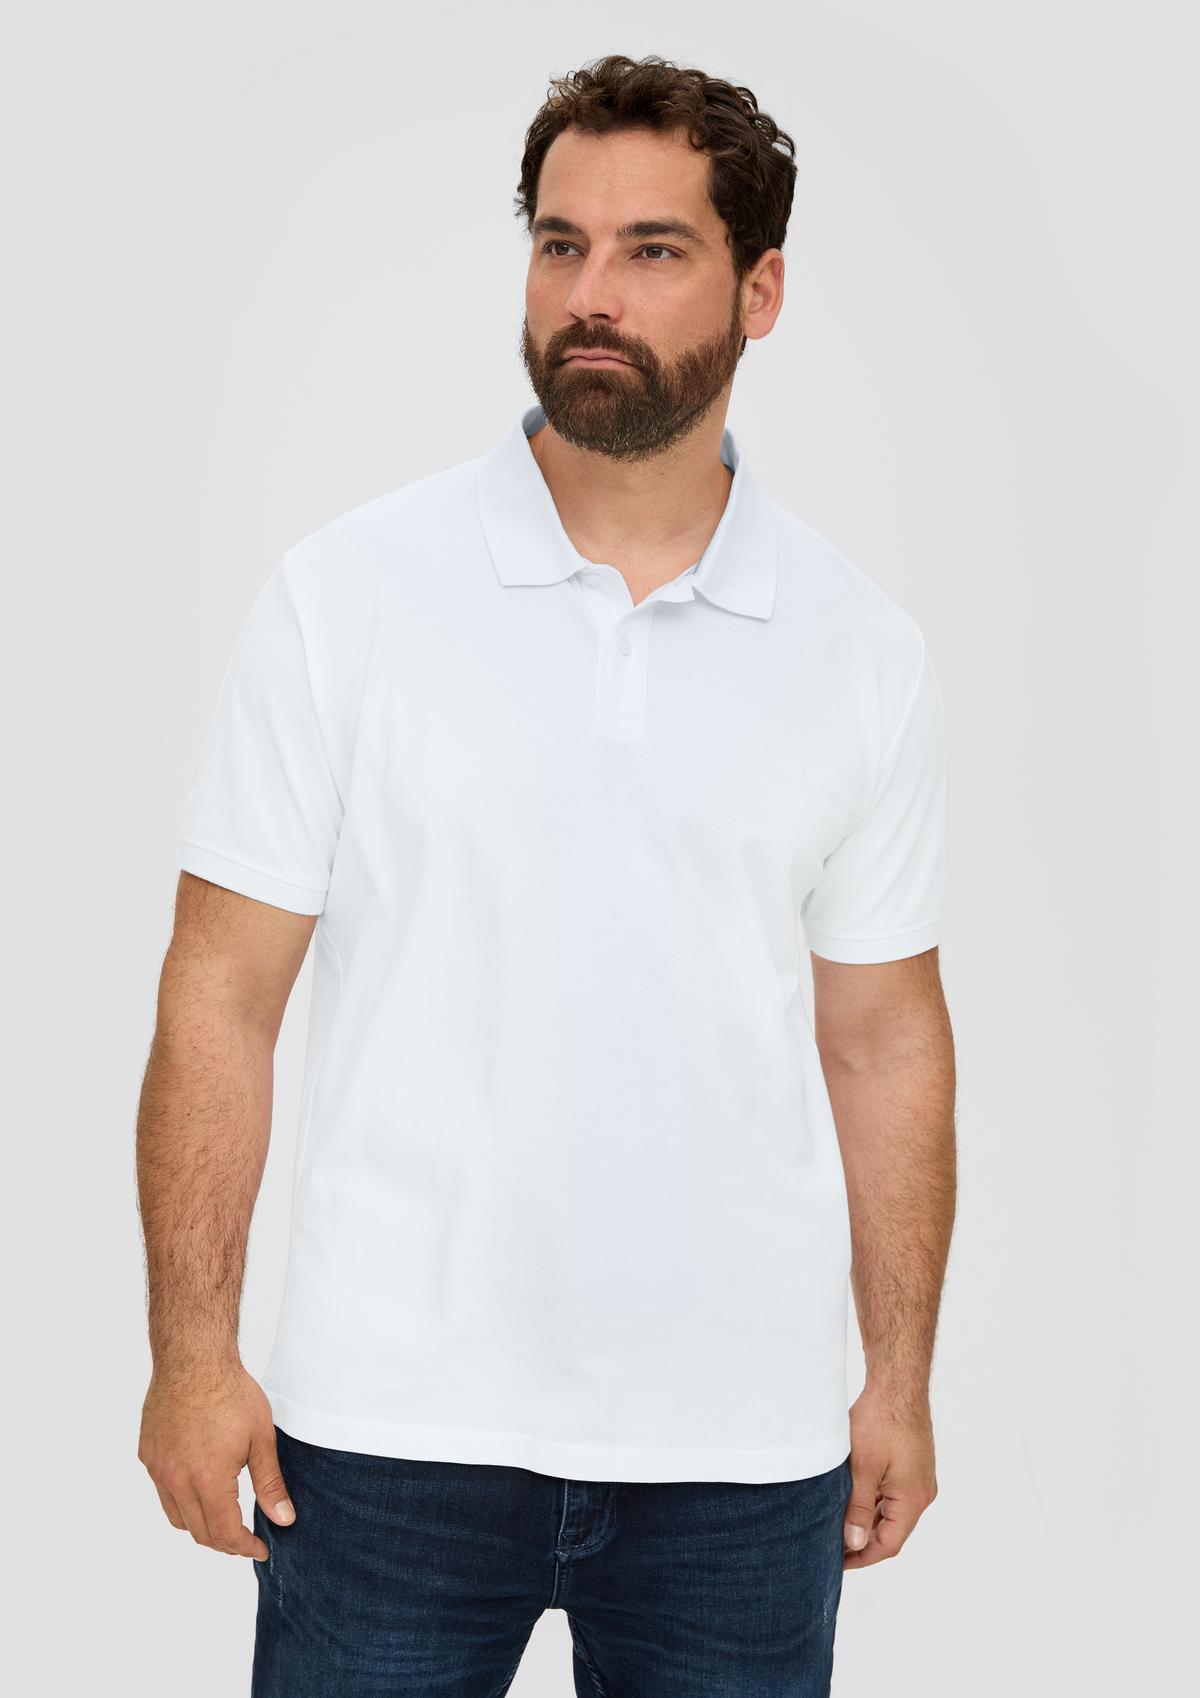 Polo - appliqué a navy with shirt logo